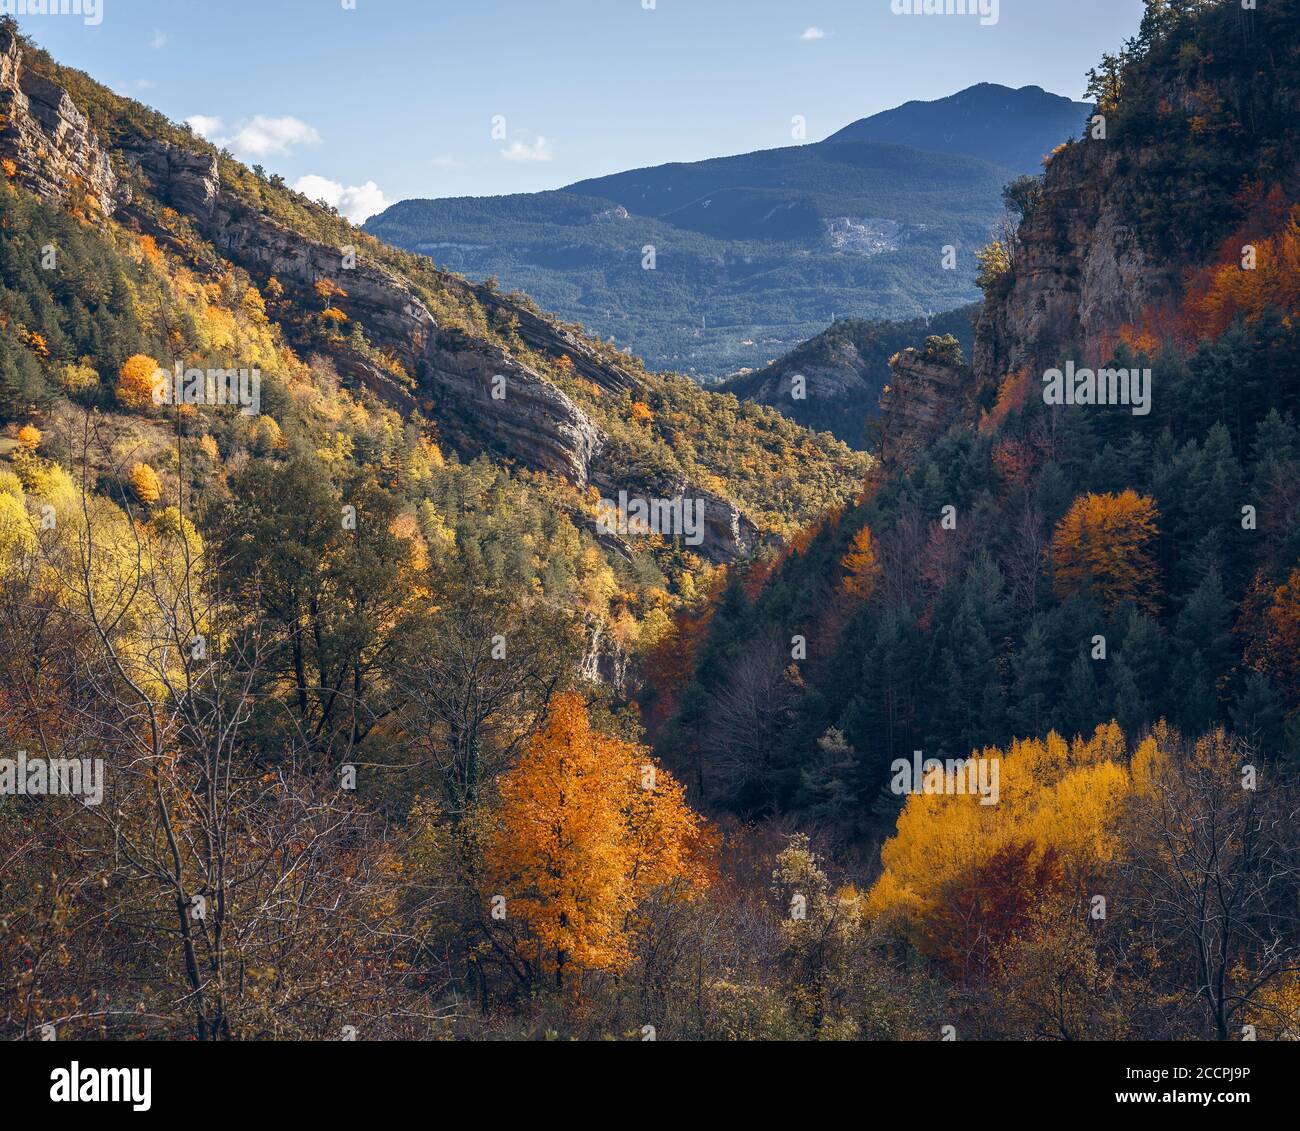 Paisaje de árboles otoñales, temporada de otoño en Bergueda, Cataluña Foto de stock